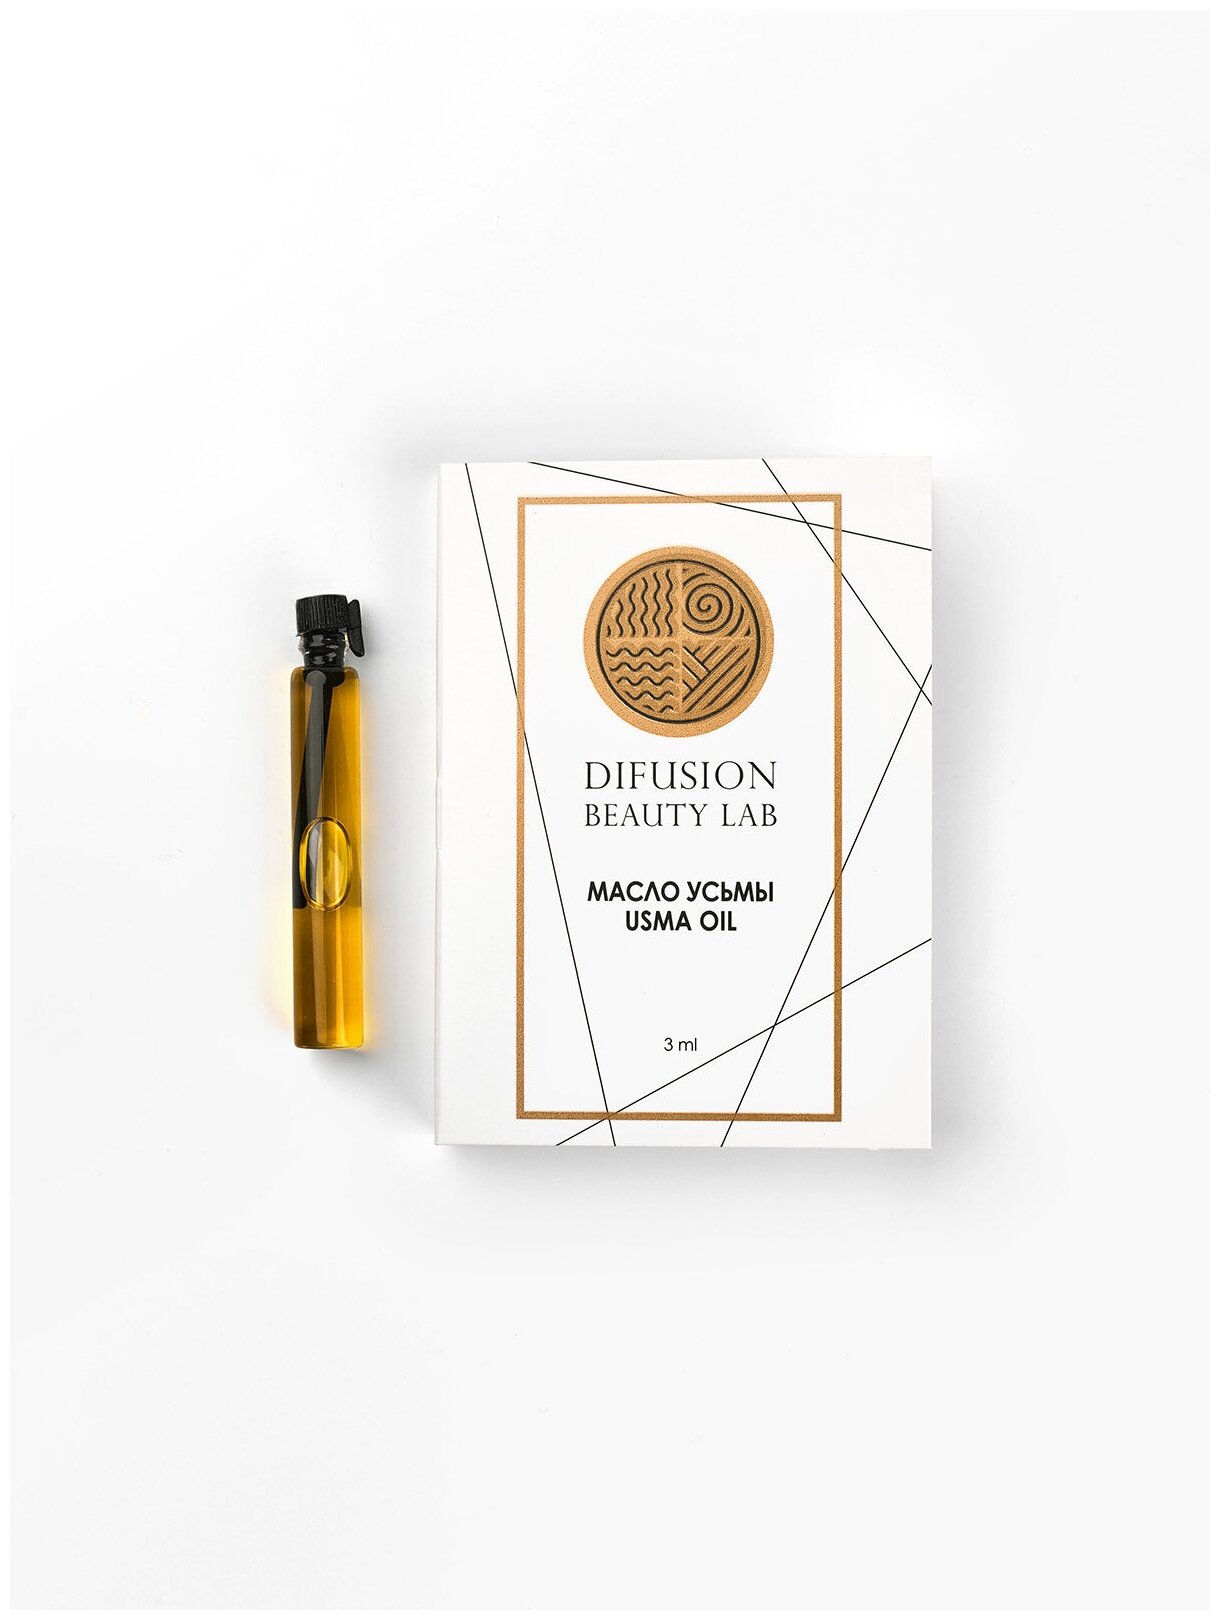 Масло семян усьмы Difusion Beauty Lab (для активации роста волос, бровей и ресниц), 3 мл